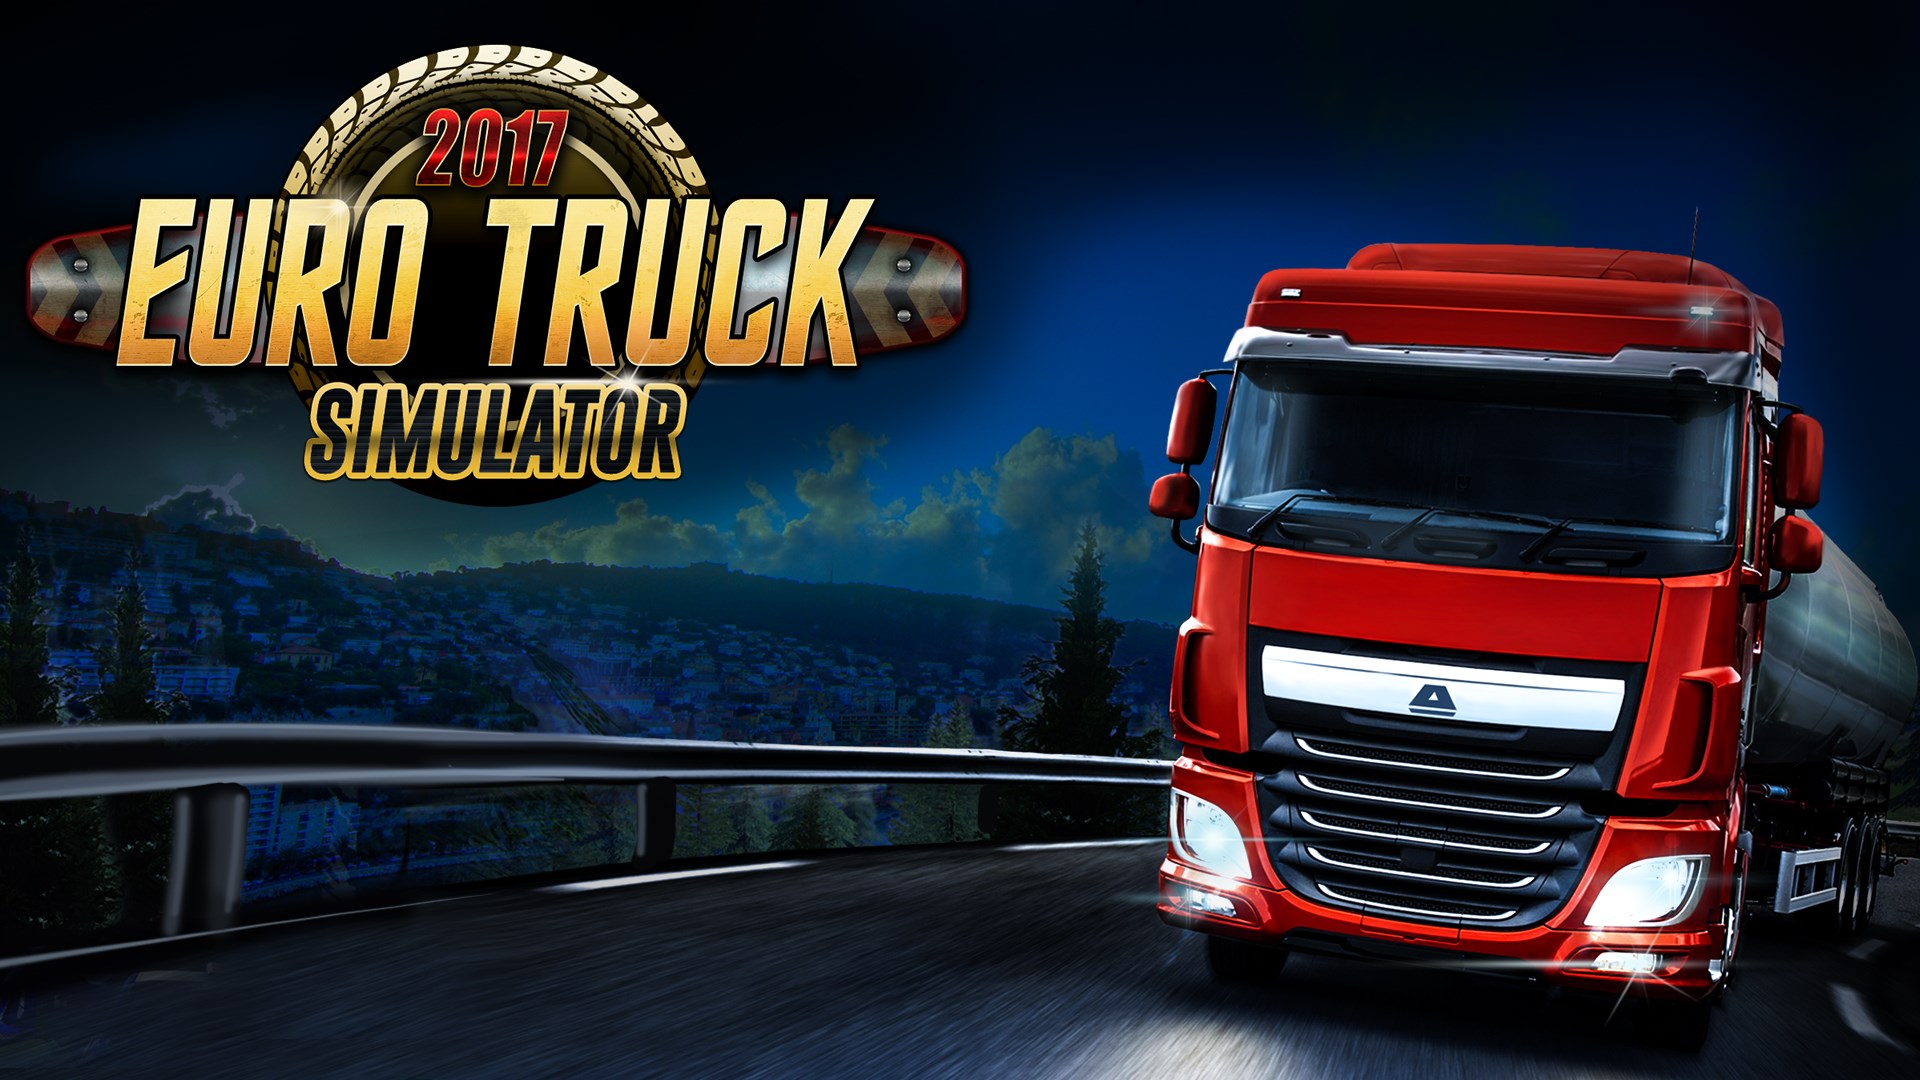 Comprar Euro Truck Simulator 2017 Pro - Microsoft Store pt-BR